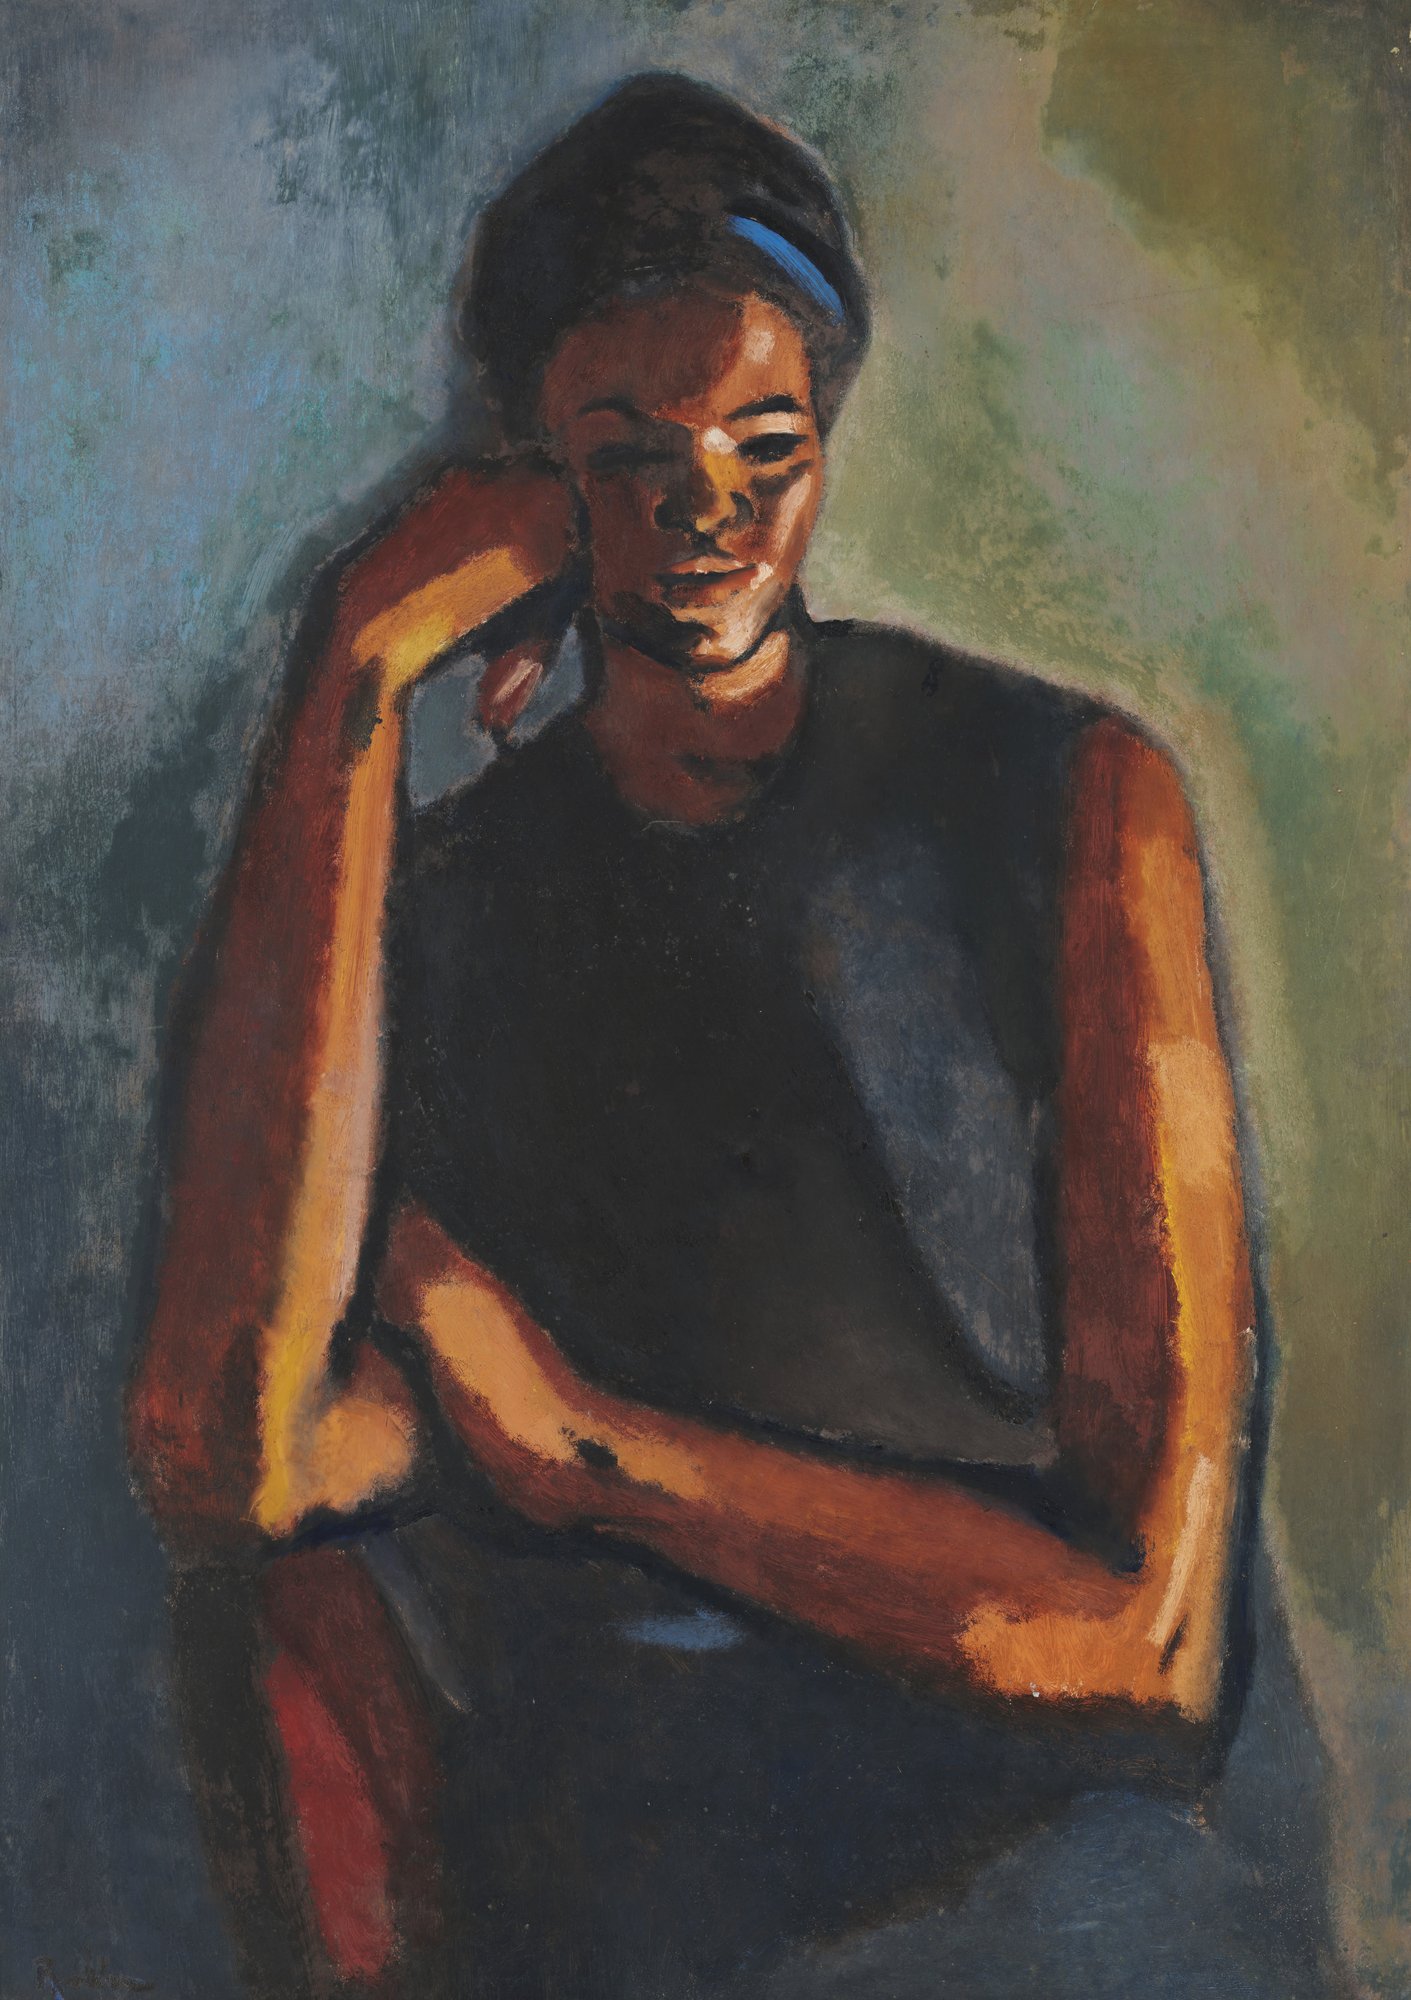 Pintura que tiene en el centro a una mujer negra con una cinta azul en el pelo y una de sus manos tocando su cara